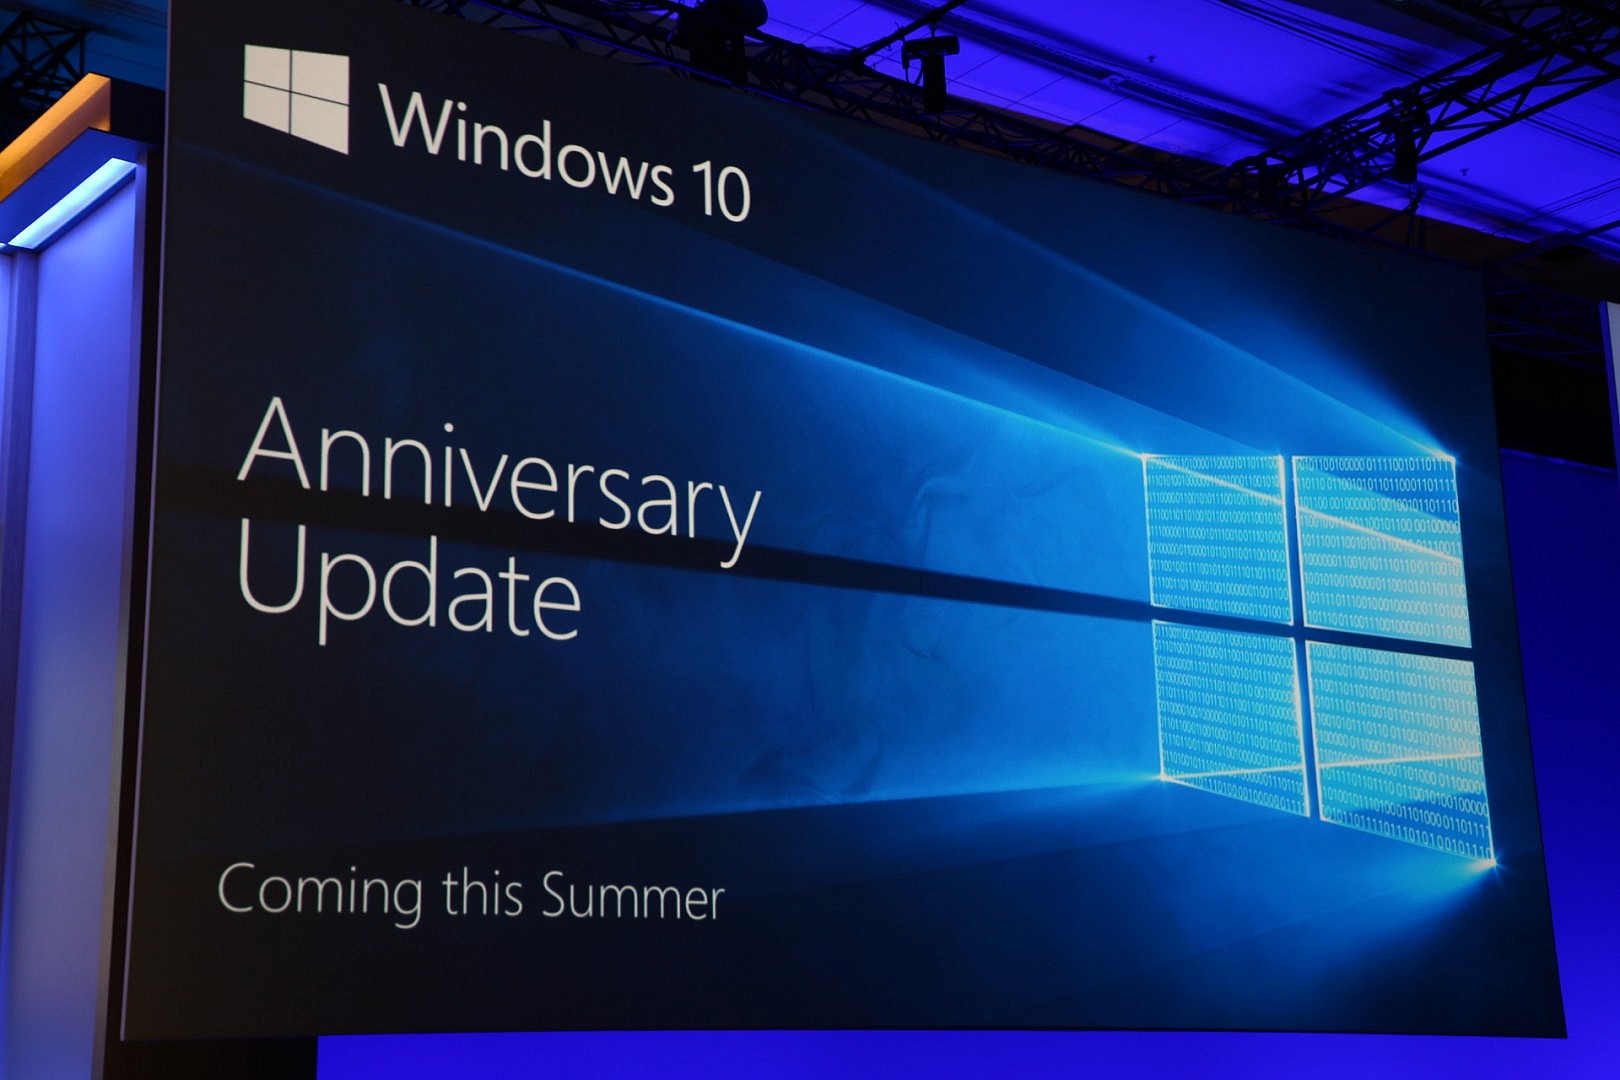 สไลด์ของ Windows 10 Anniversary Update ในงาน Build 2016 มีโค้ดลับซ่อนอยู่ รู้ป่าว??